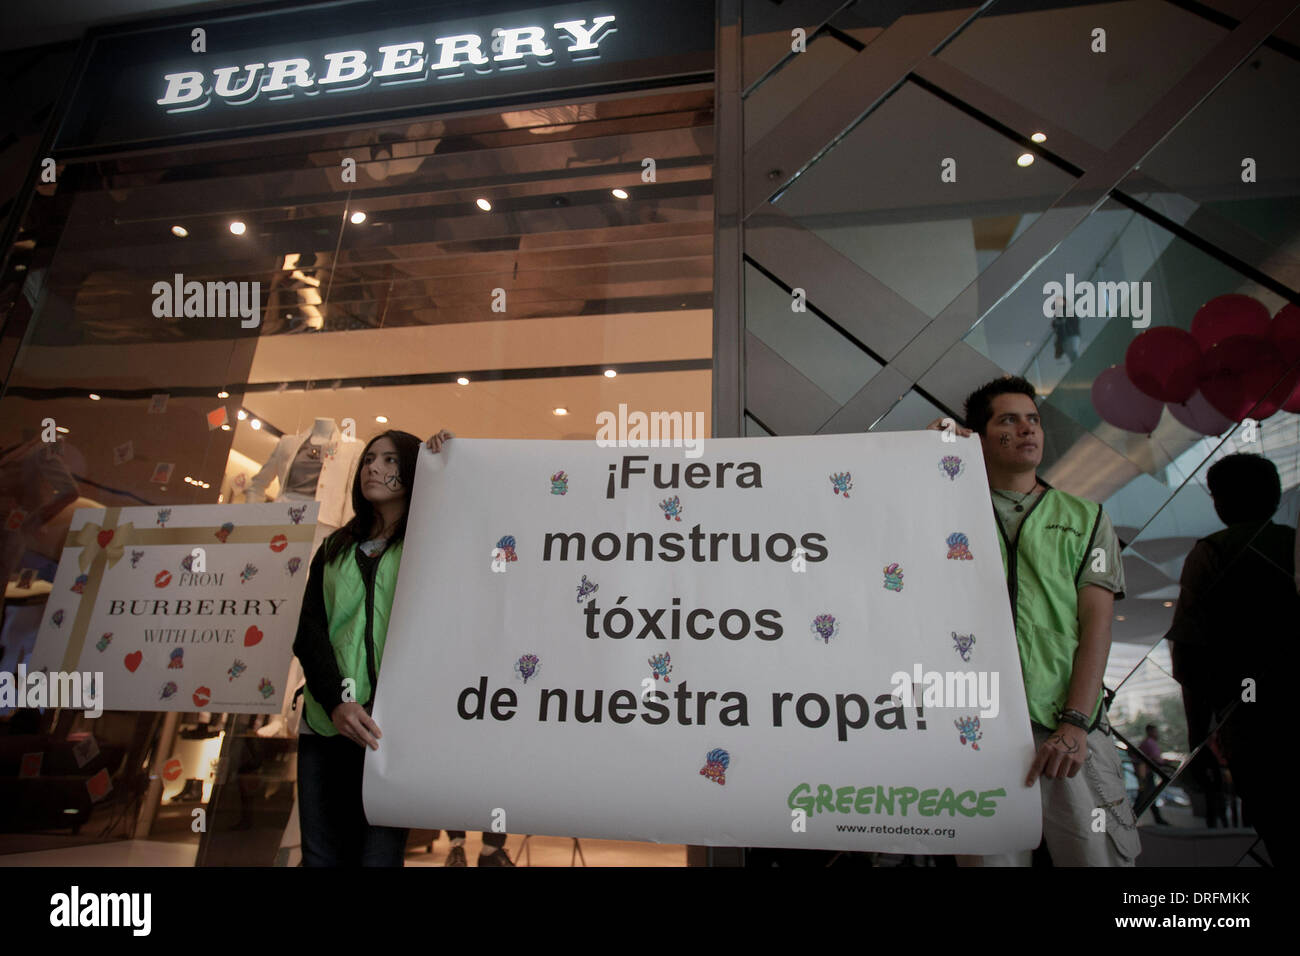 Città del Messico. 24 gen 2014. Gli attivisti dell'organizzazione ambientale Greenpeace protesta davanti a un negozio di il marchio di lusso britannico Burberry, chiedendo l'eliminazione delle sostanze chimiche per i loro prodotti in Città del Messico, capitale del Messico, il 24 gennaio, 2014. Credito: Alejandro Ayala/Xinhua/Alamy Live News Foto Stock